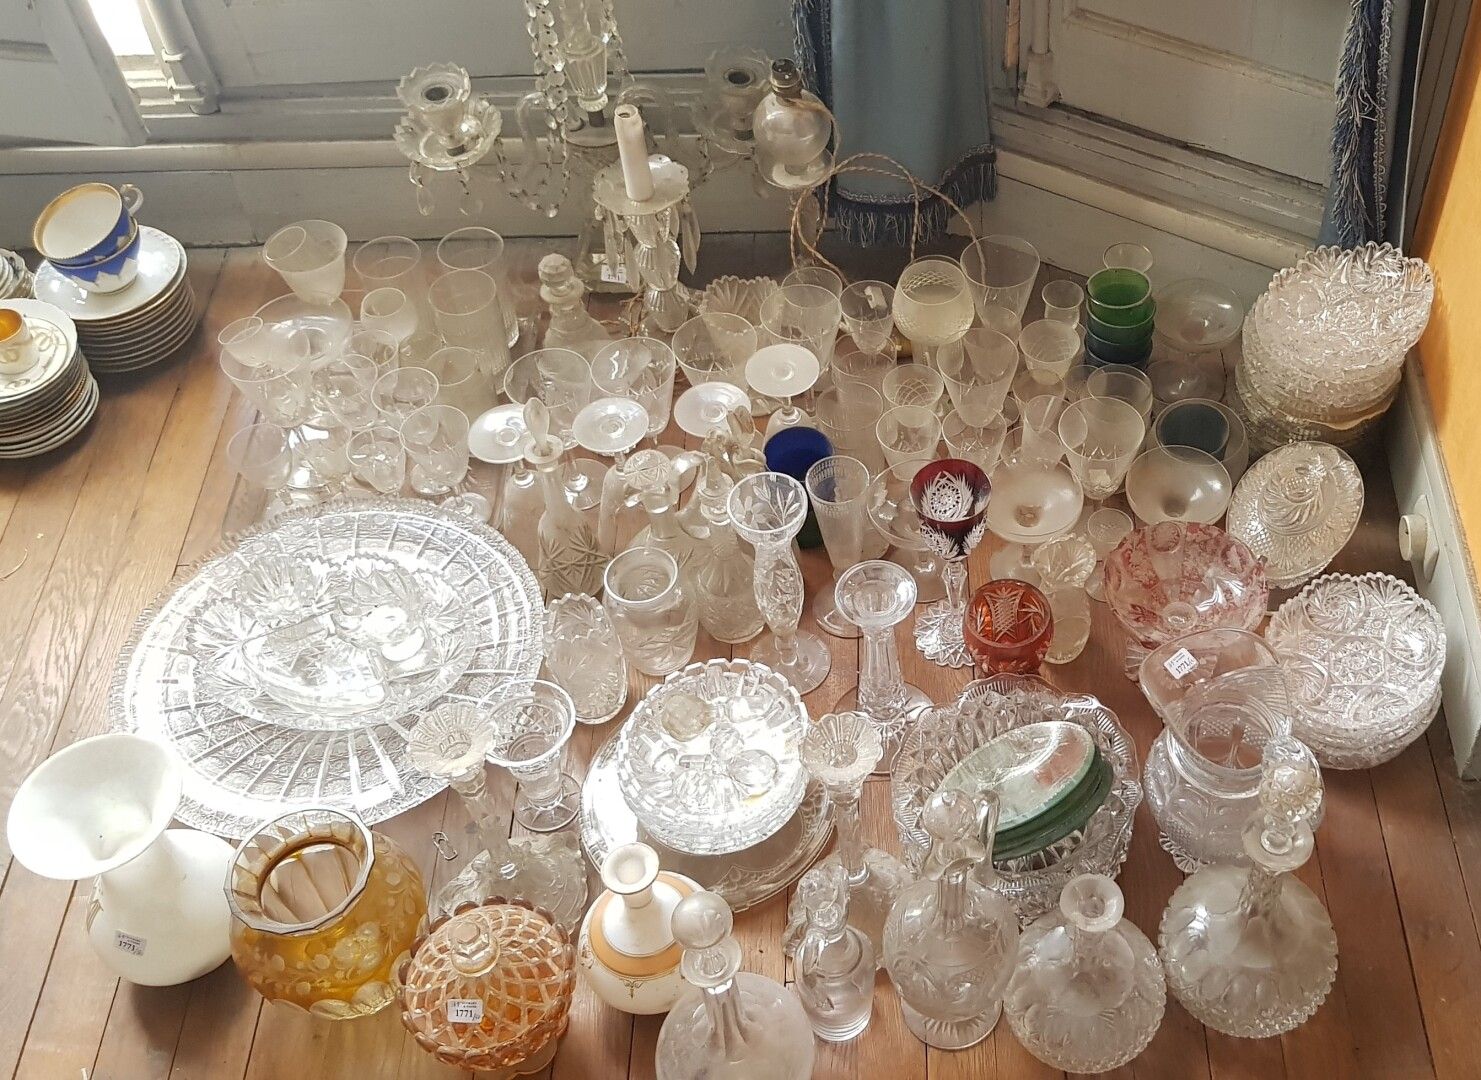 Null 玻璃器皿和水晶套装包括:

玻璃维修零件

花瓶

波西米亚玻璃器皿

火把

杯子、烛台、碗、浇注器......。